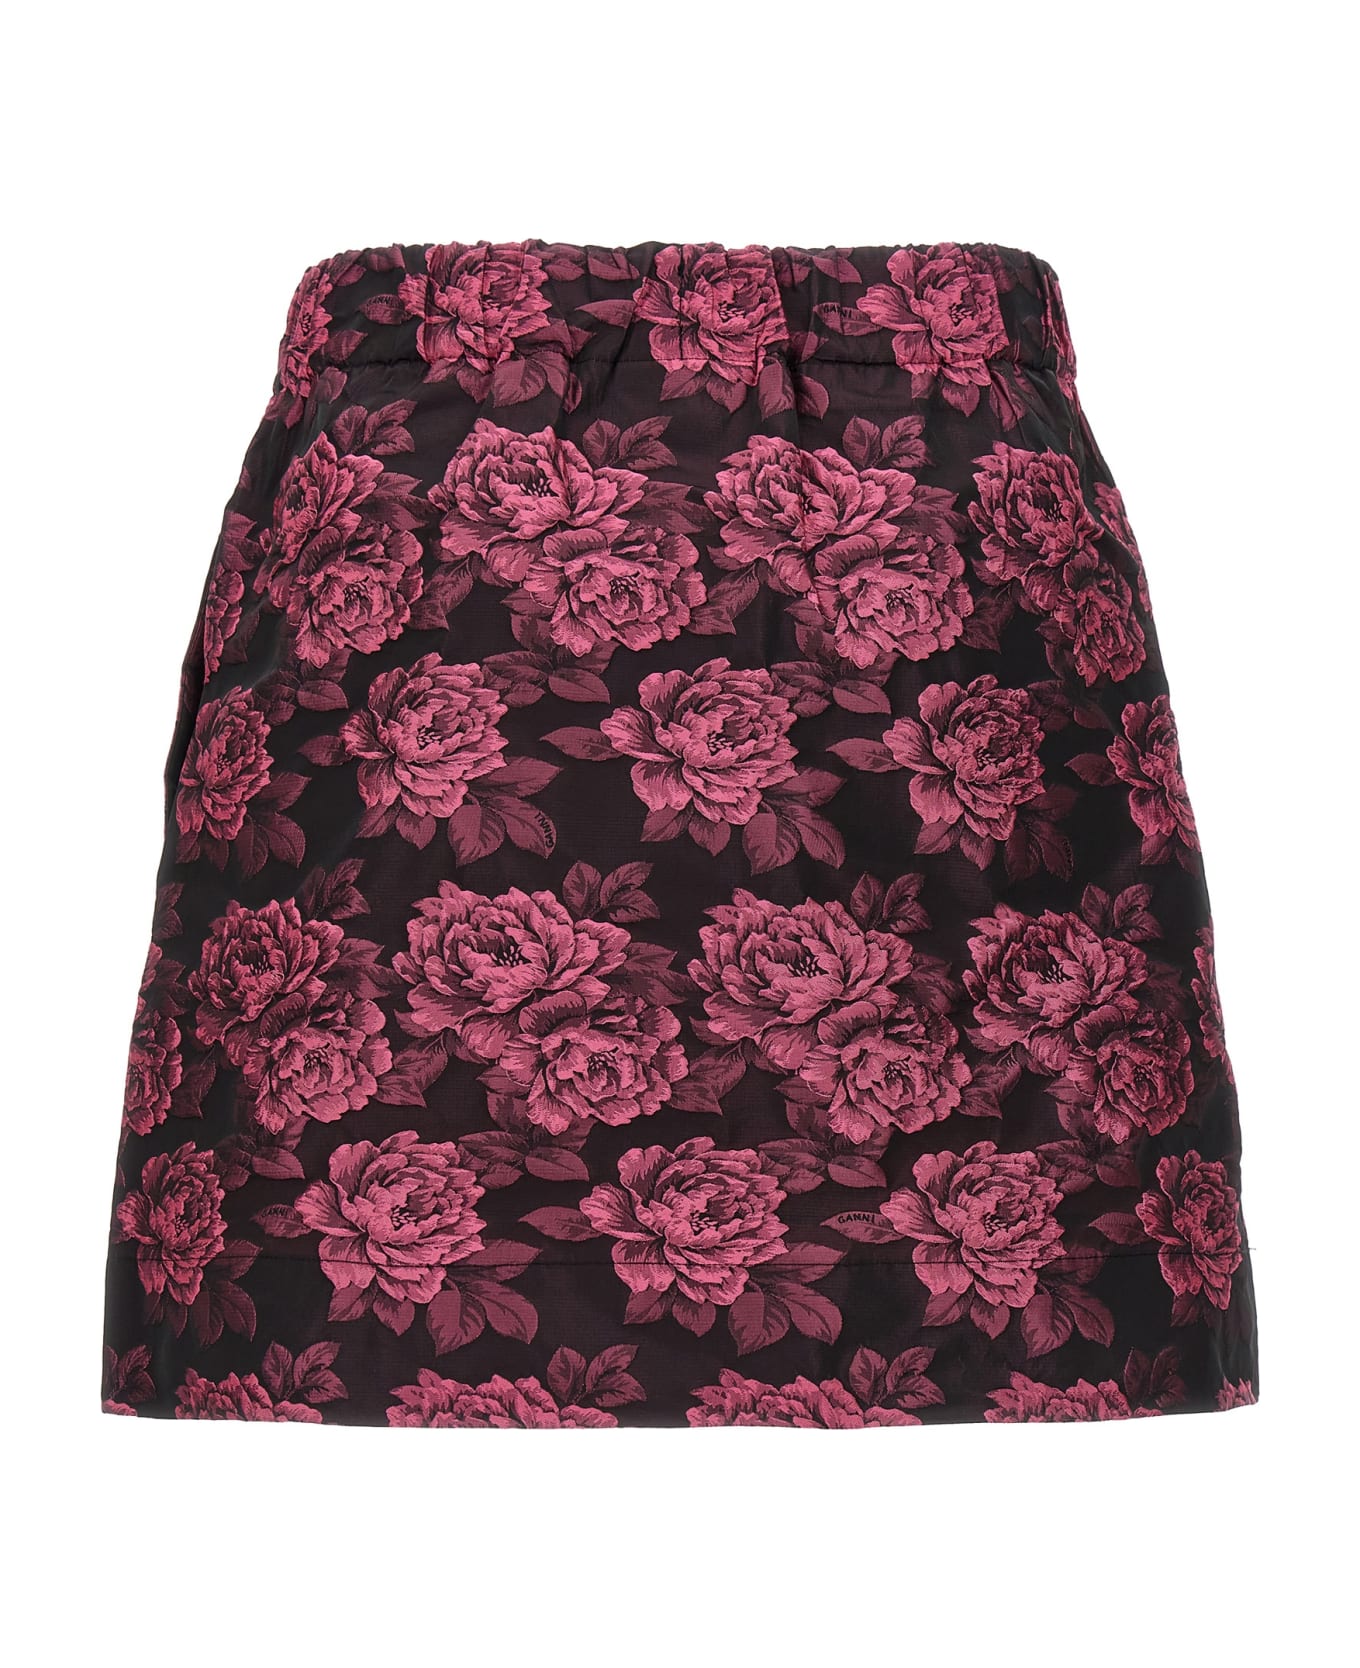 Ganni Floral Jacquard Skirt